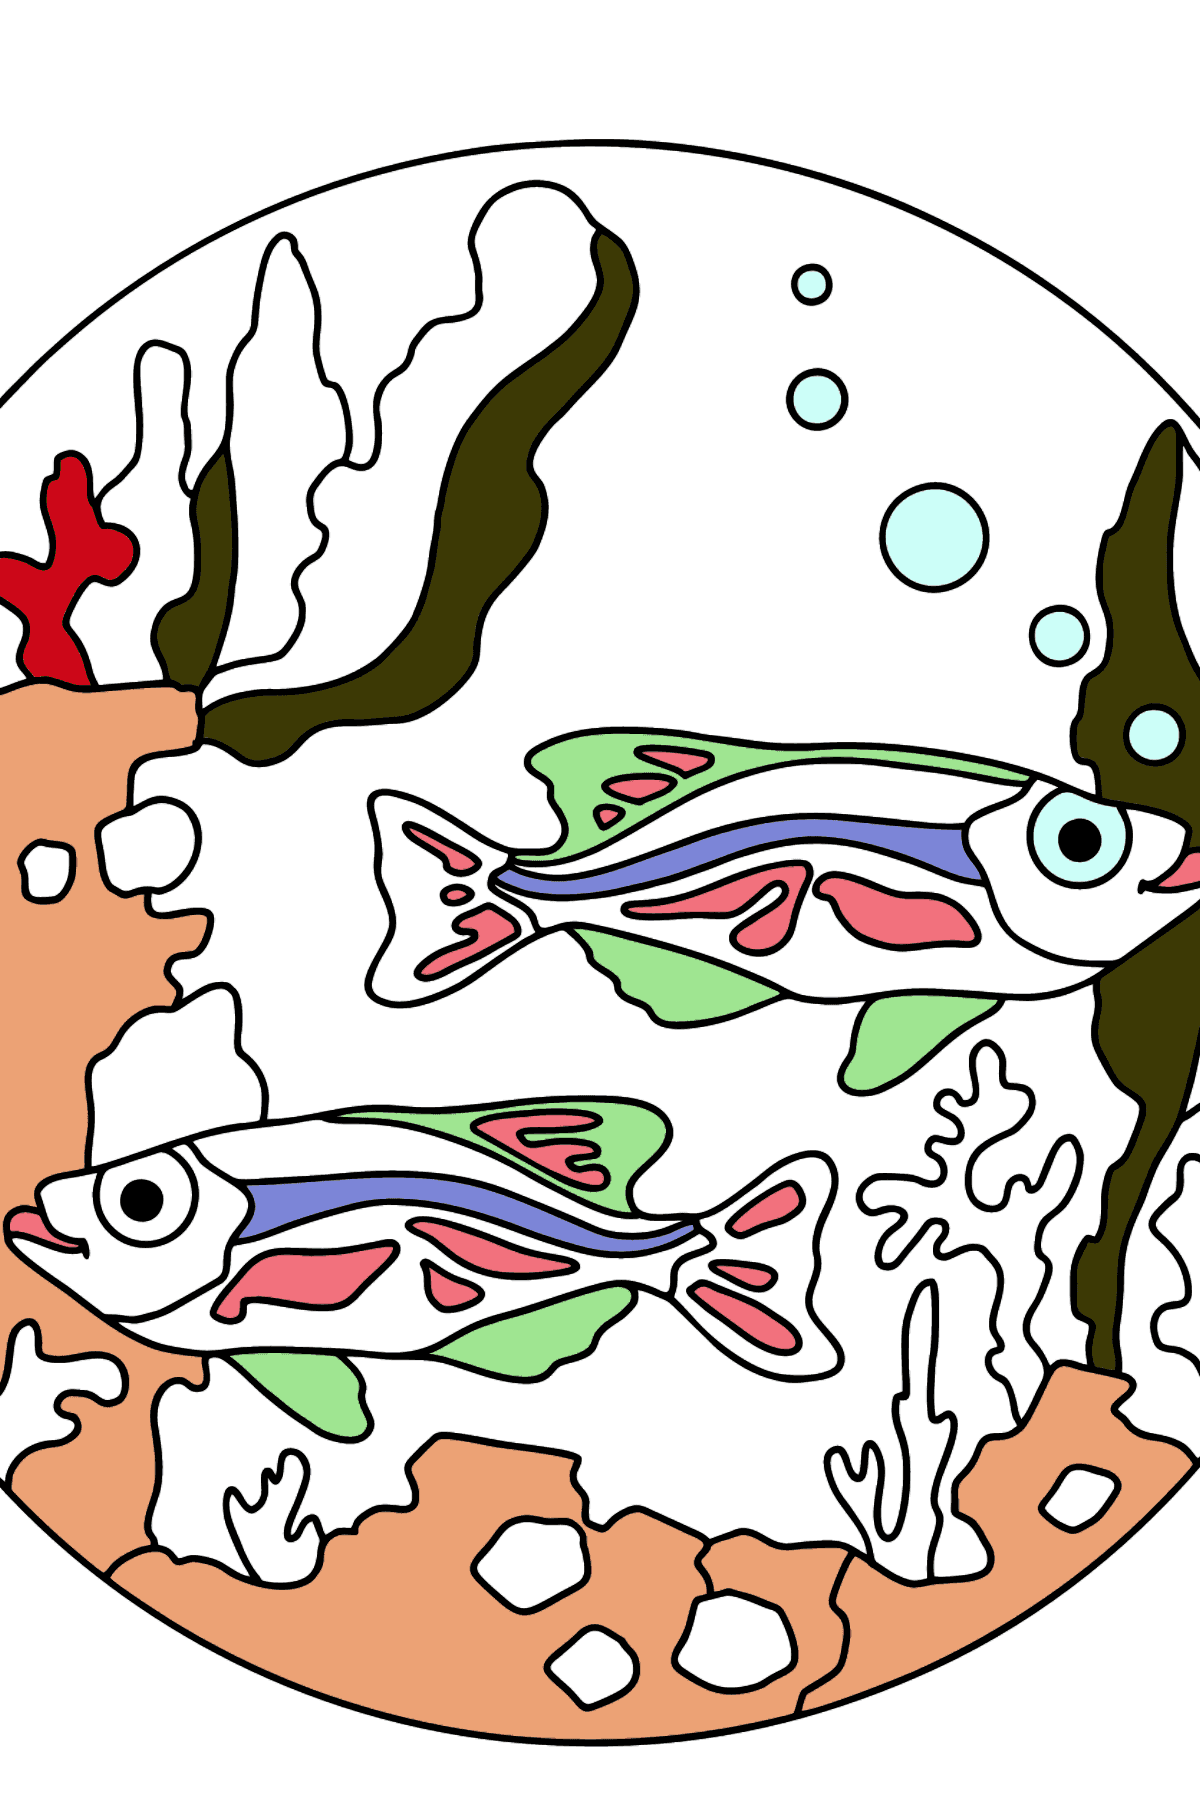 Dibujo para Colorear - Los Peces están Nadando Juntos Pacíficamente - Dibujos para Colorear para Niños